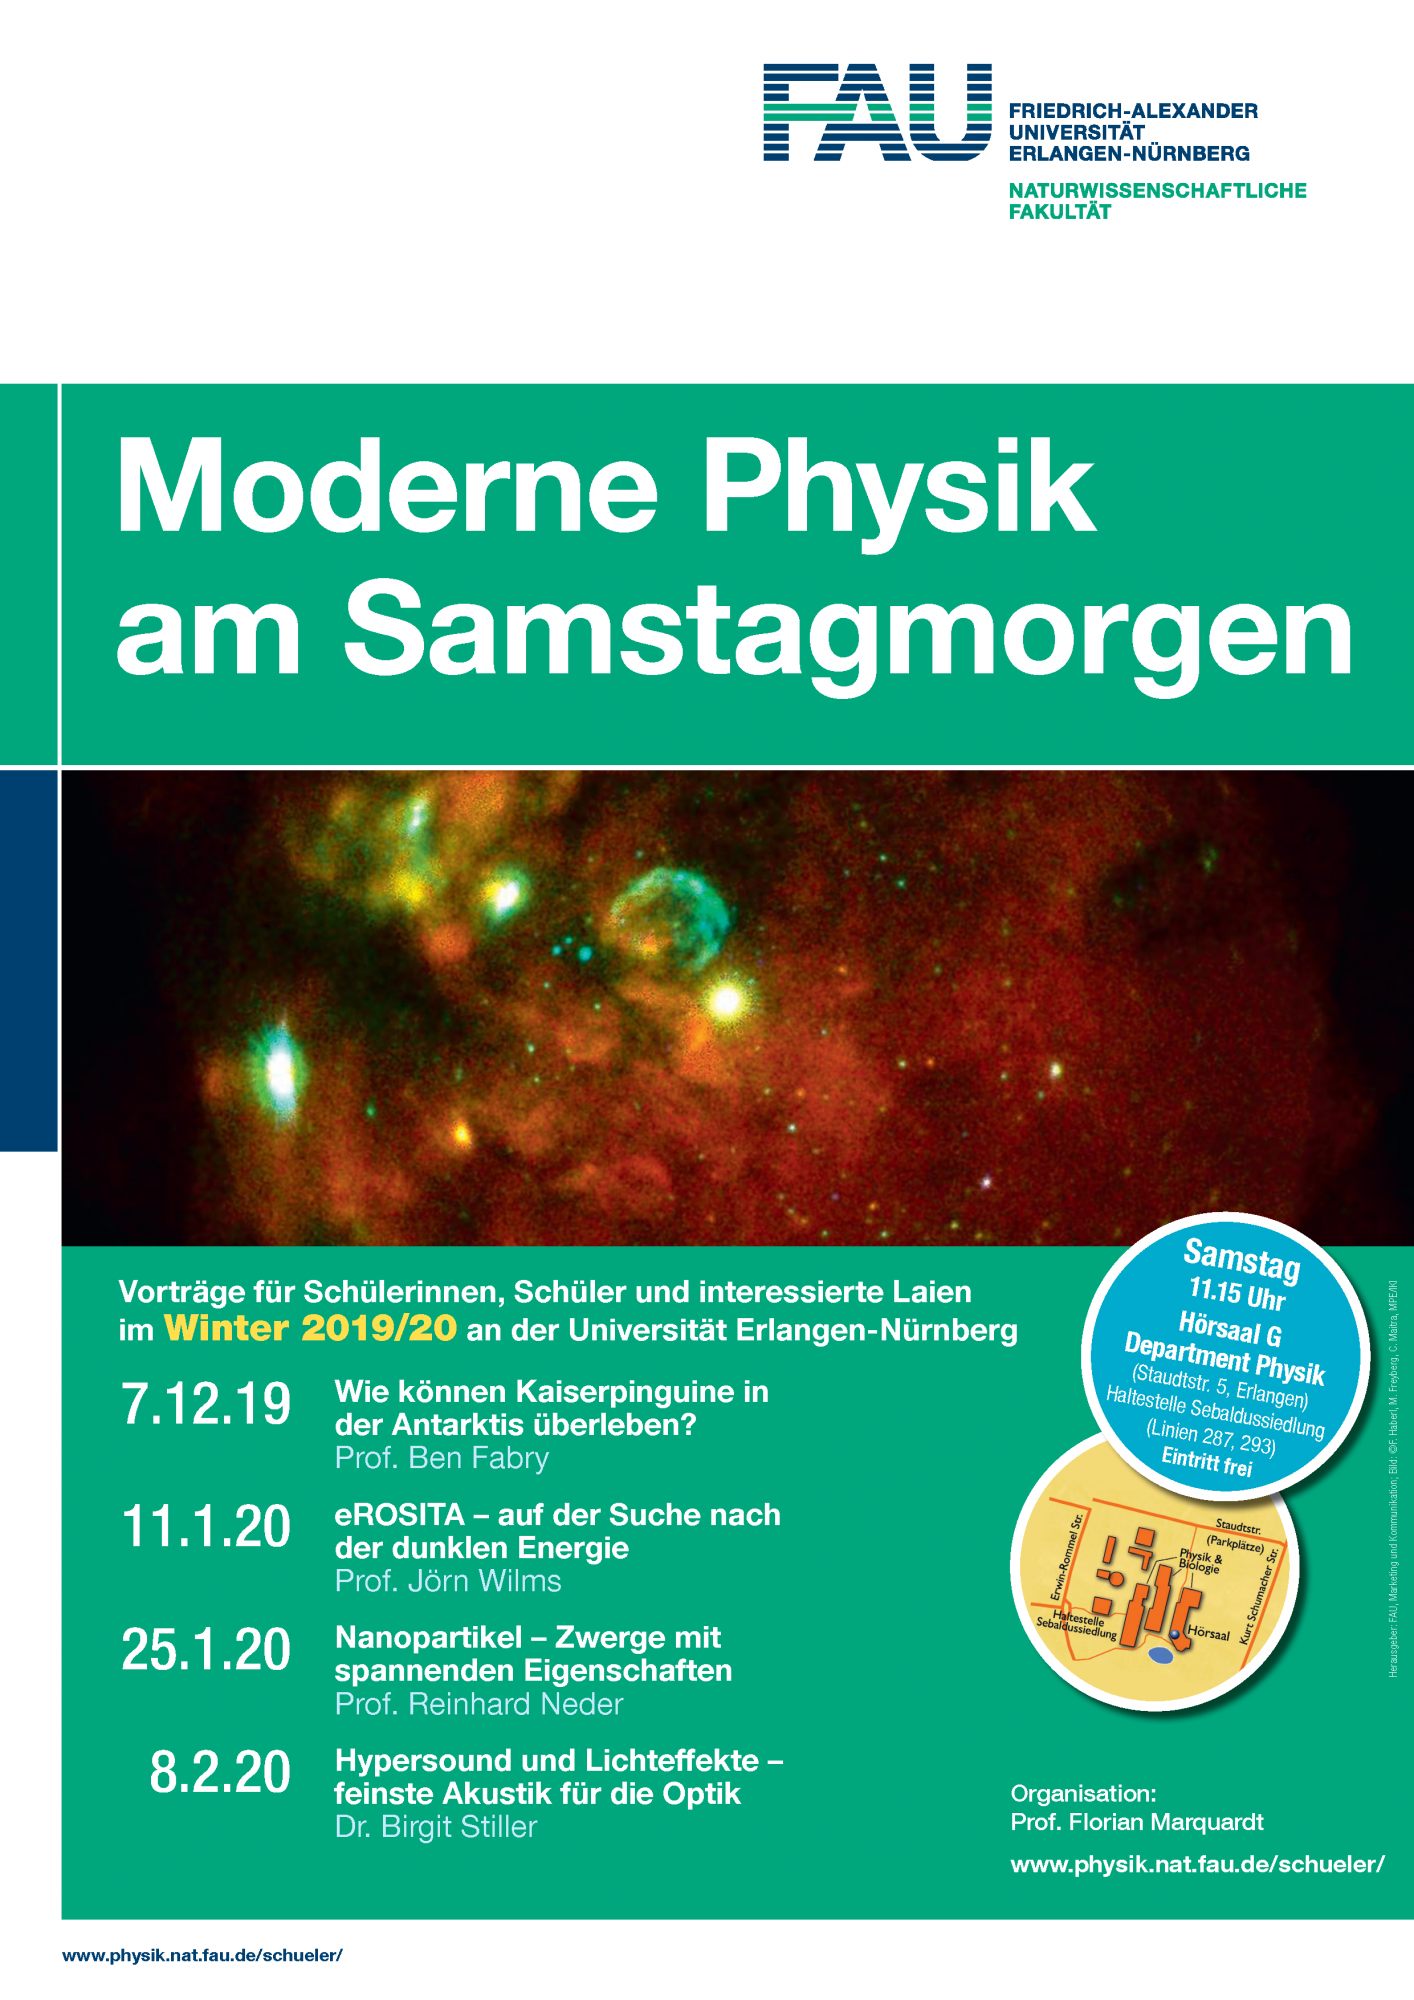 Zum Artikel "Vortragsreihe “Moderne Physik am Samstagmorgen” startet am 7.12.19"